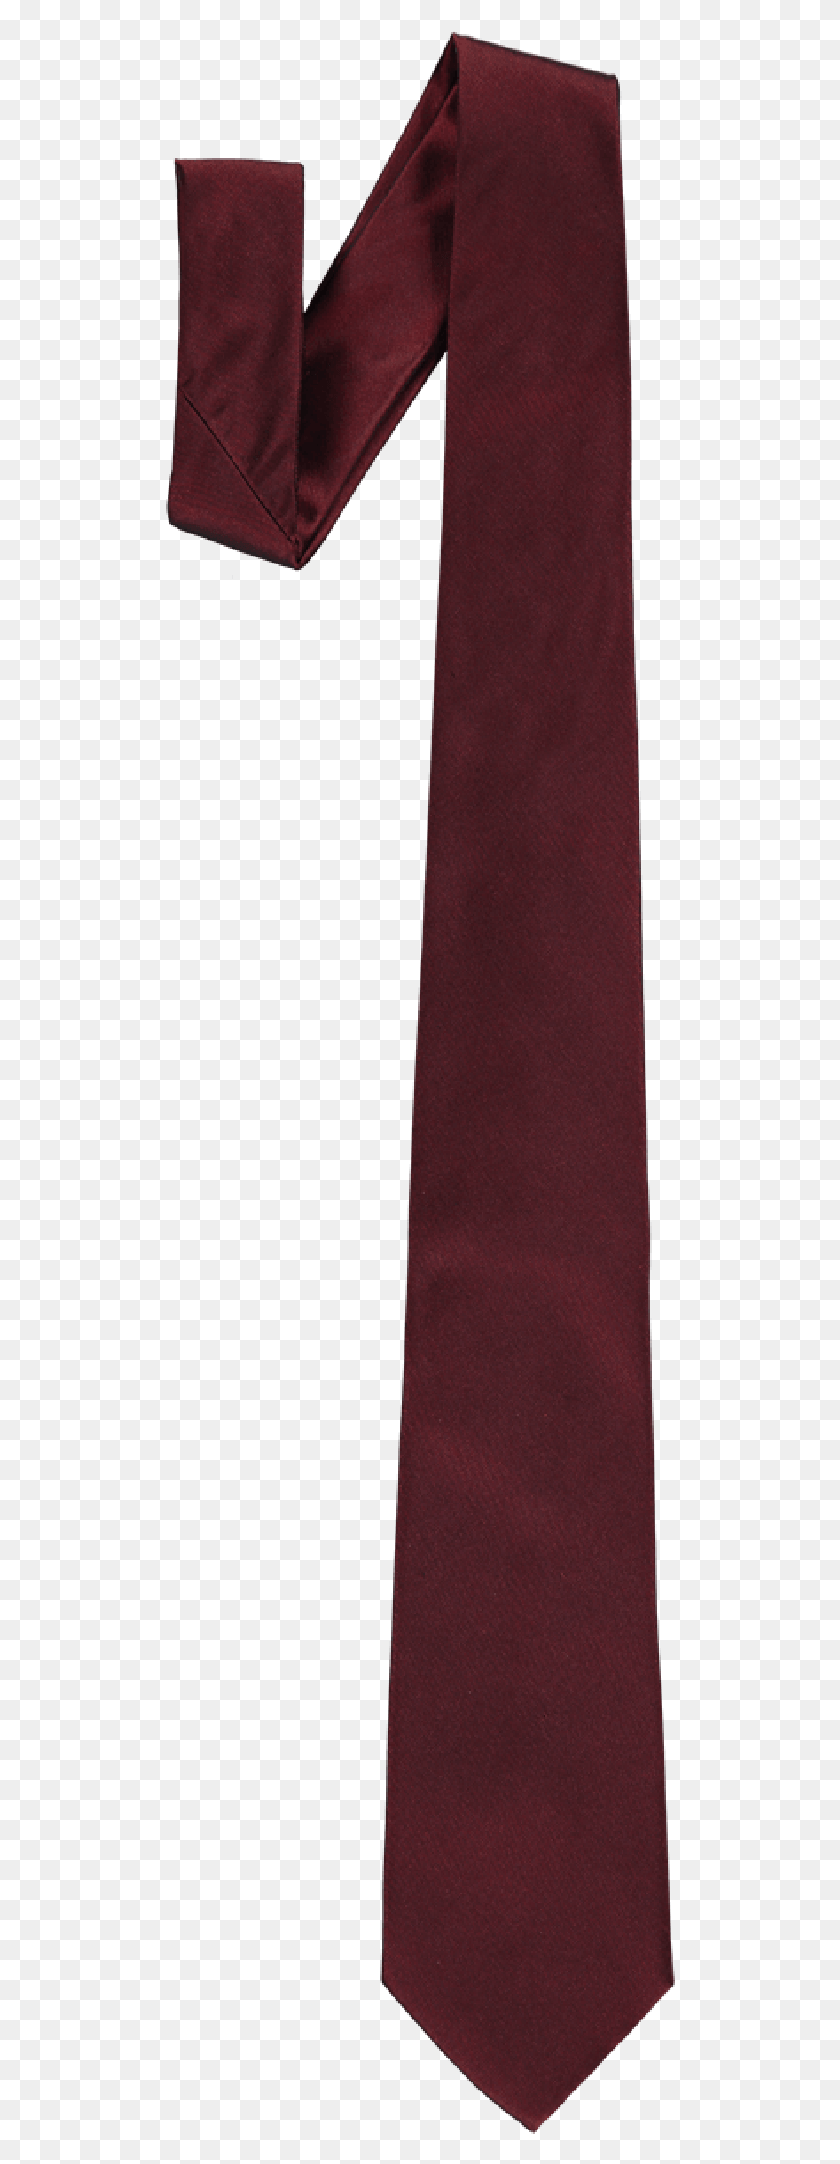 510x2104 Descargar Png / Corbata De Color Rojo Oscuro, Accesorios, Accesorio, Corbata Hd Png